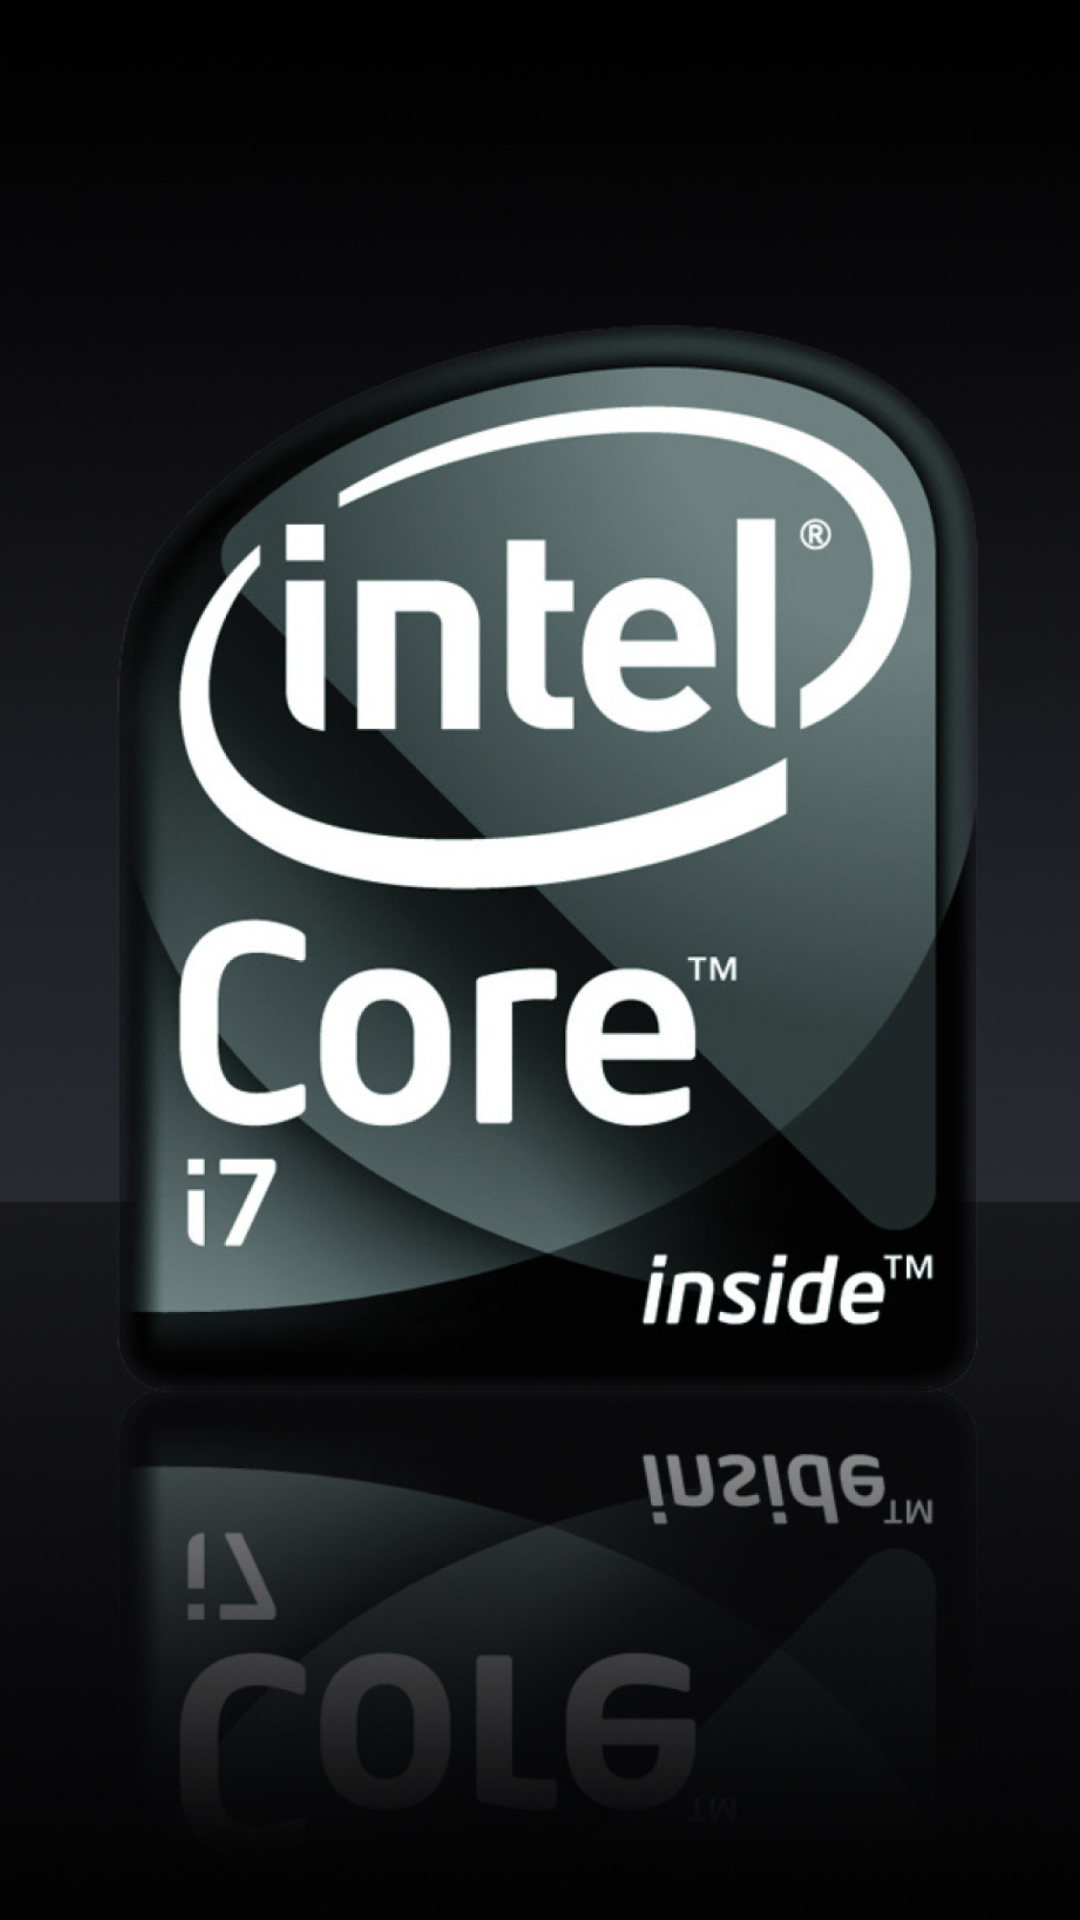 Intel Core I7 screenshot #1 1080x1920